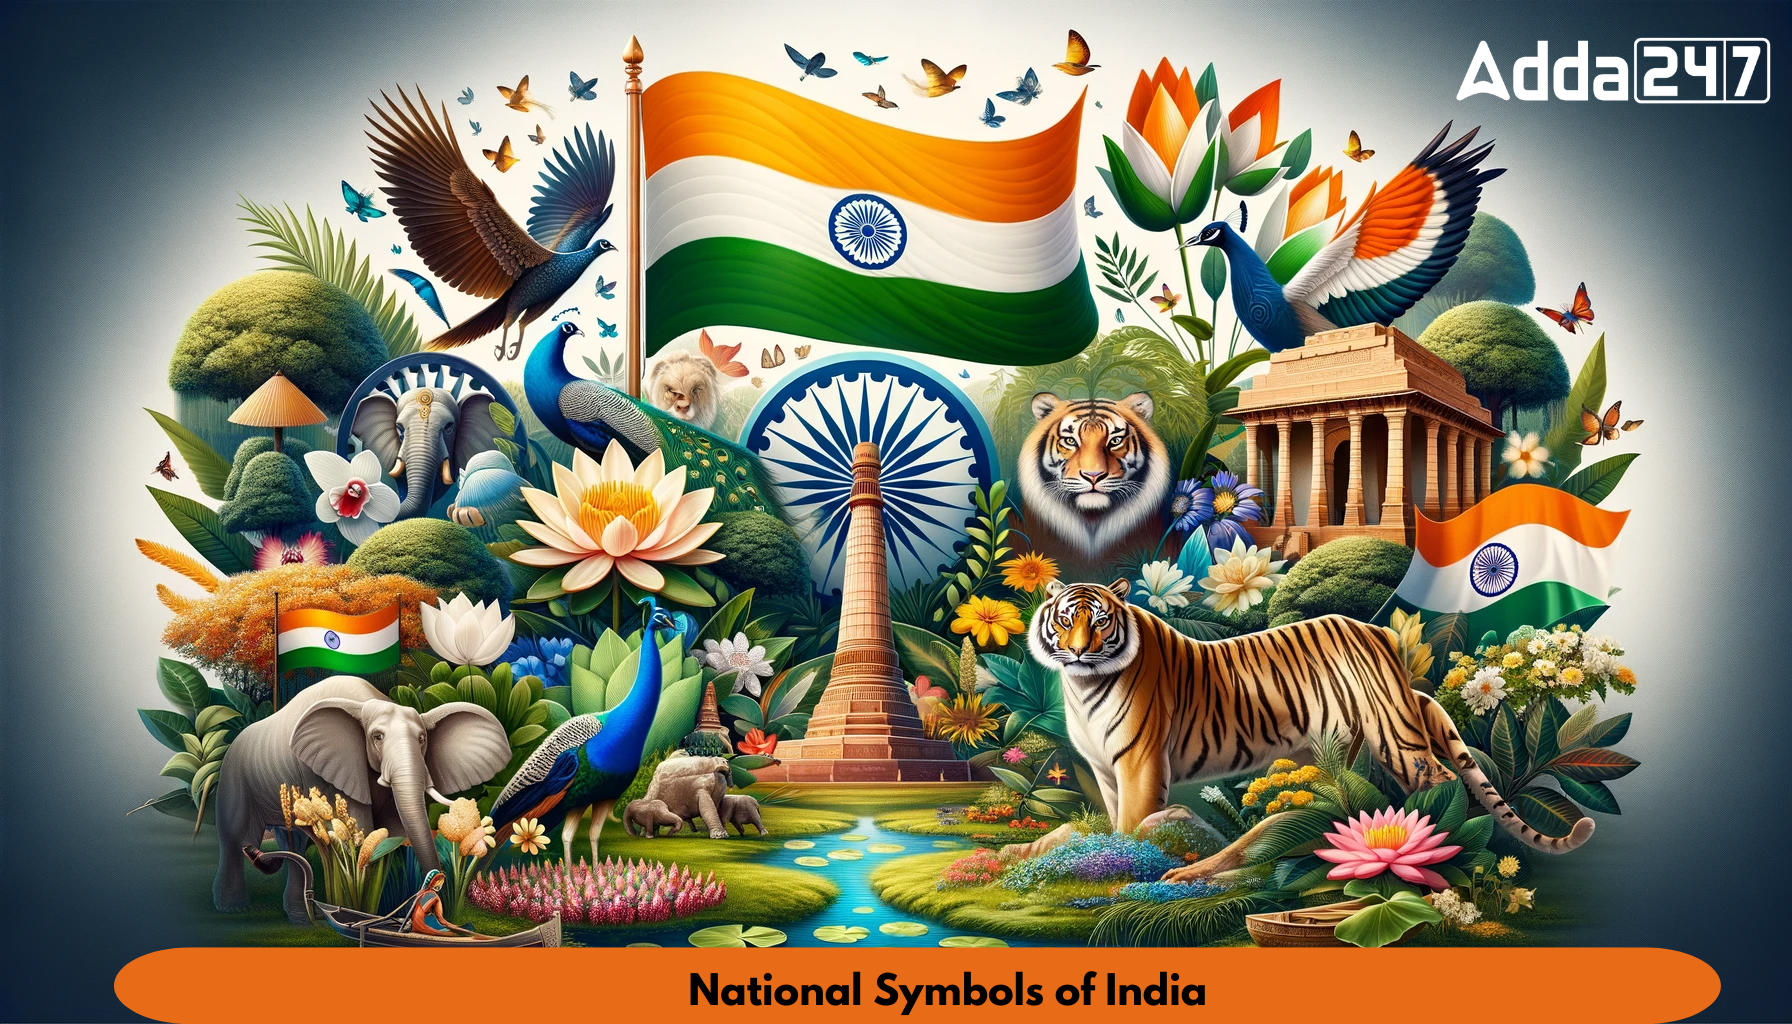 National symbols of India drawing | National symbols, Drawings, Symbols